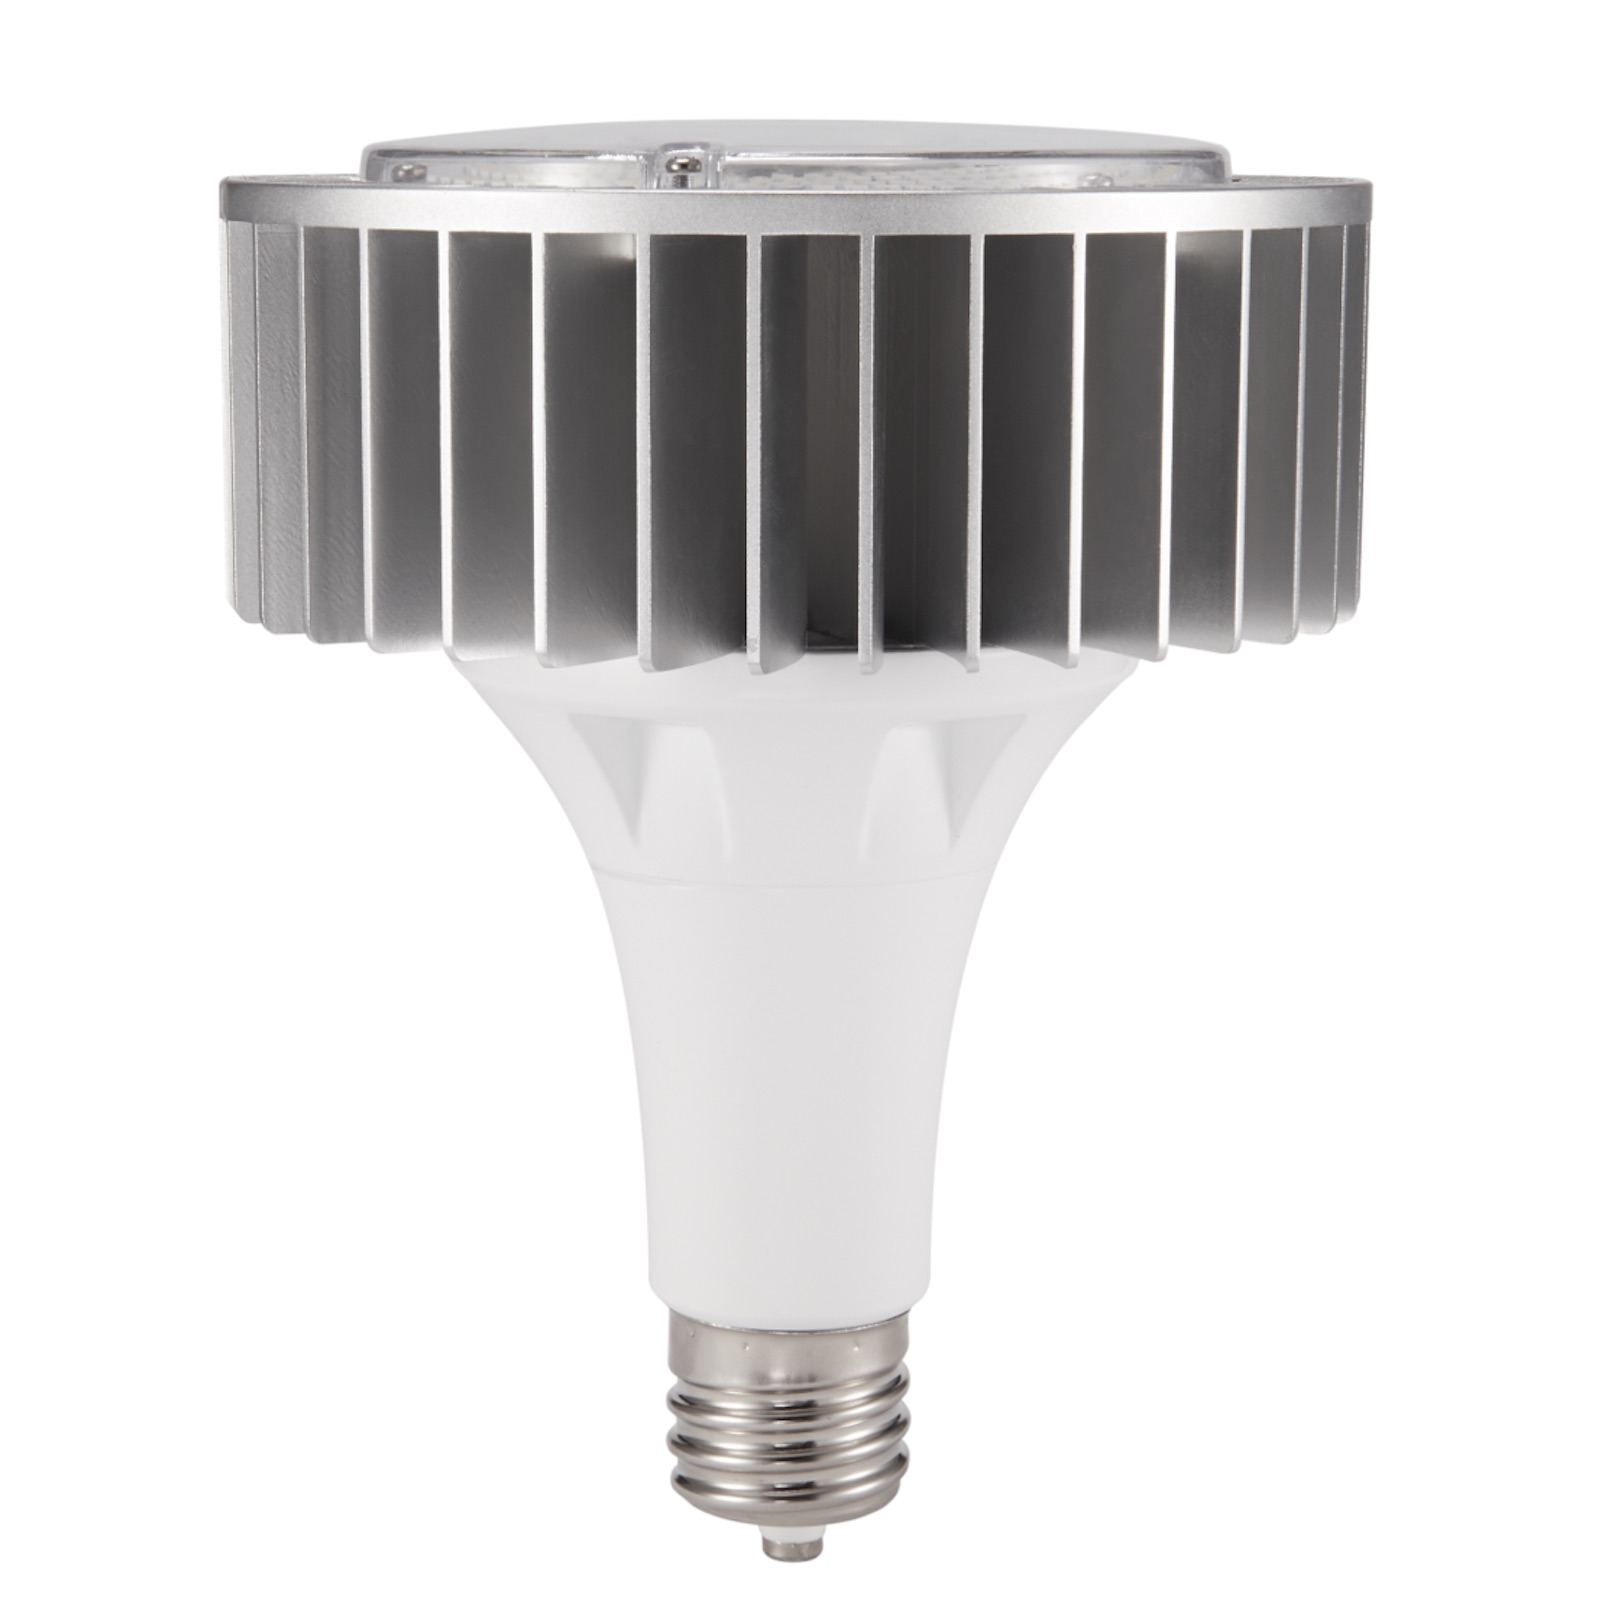 J SERIES Foreverlamp Fanless Design Plug & Play LED High Bay Lamp